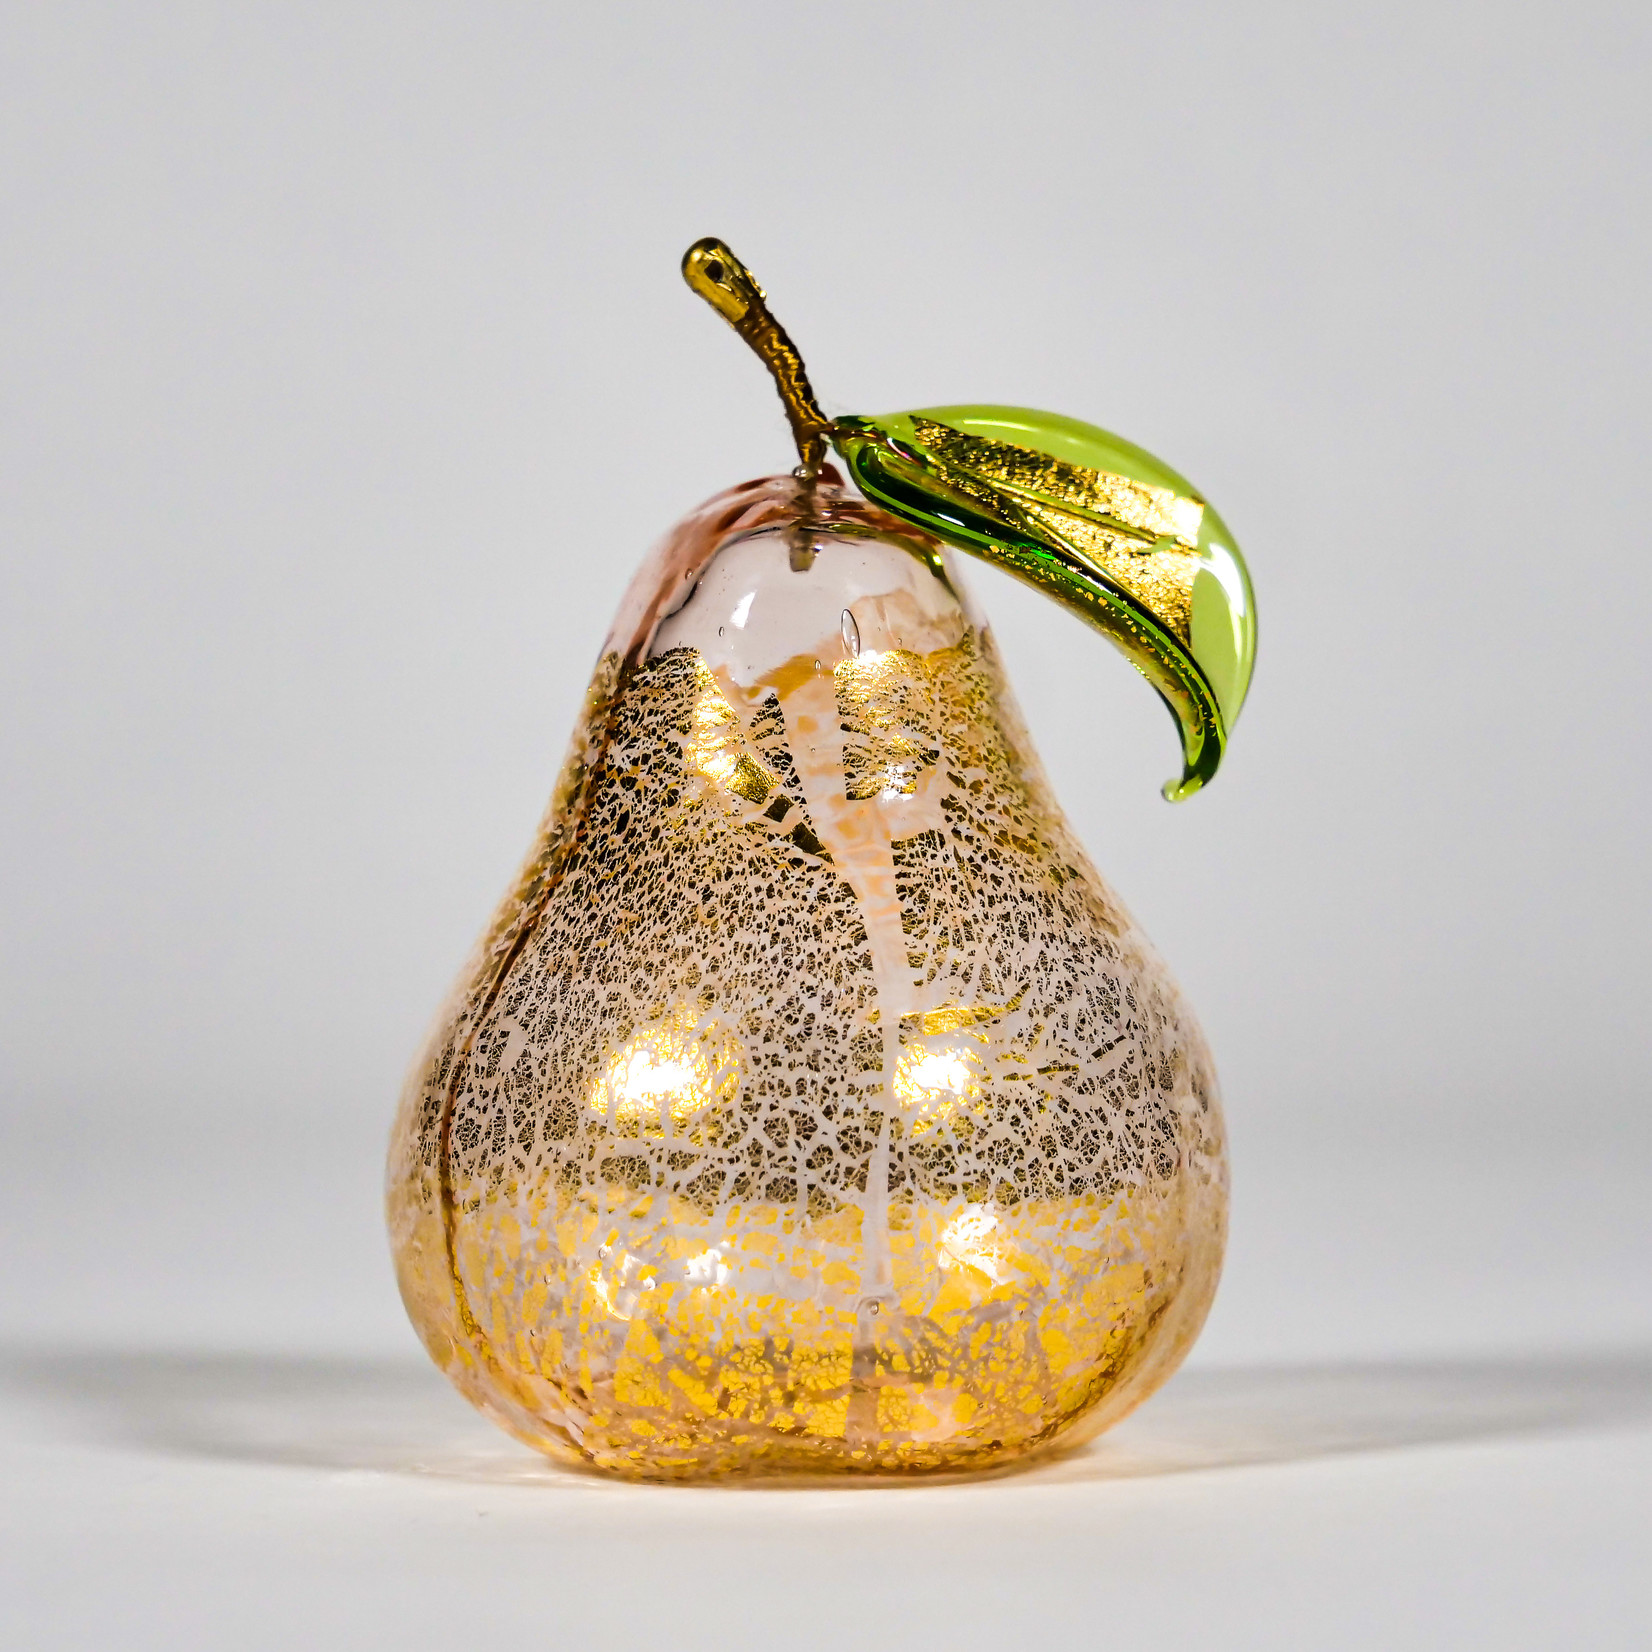 Via Graceffo Collection Via Graceffo: Murano Glass Pear